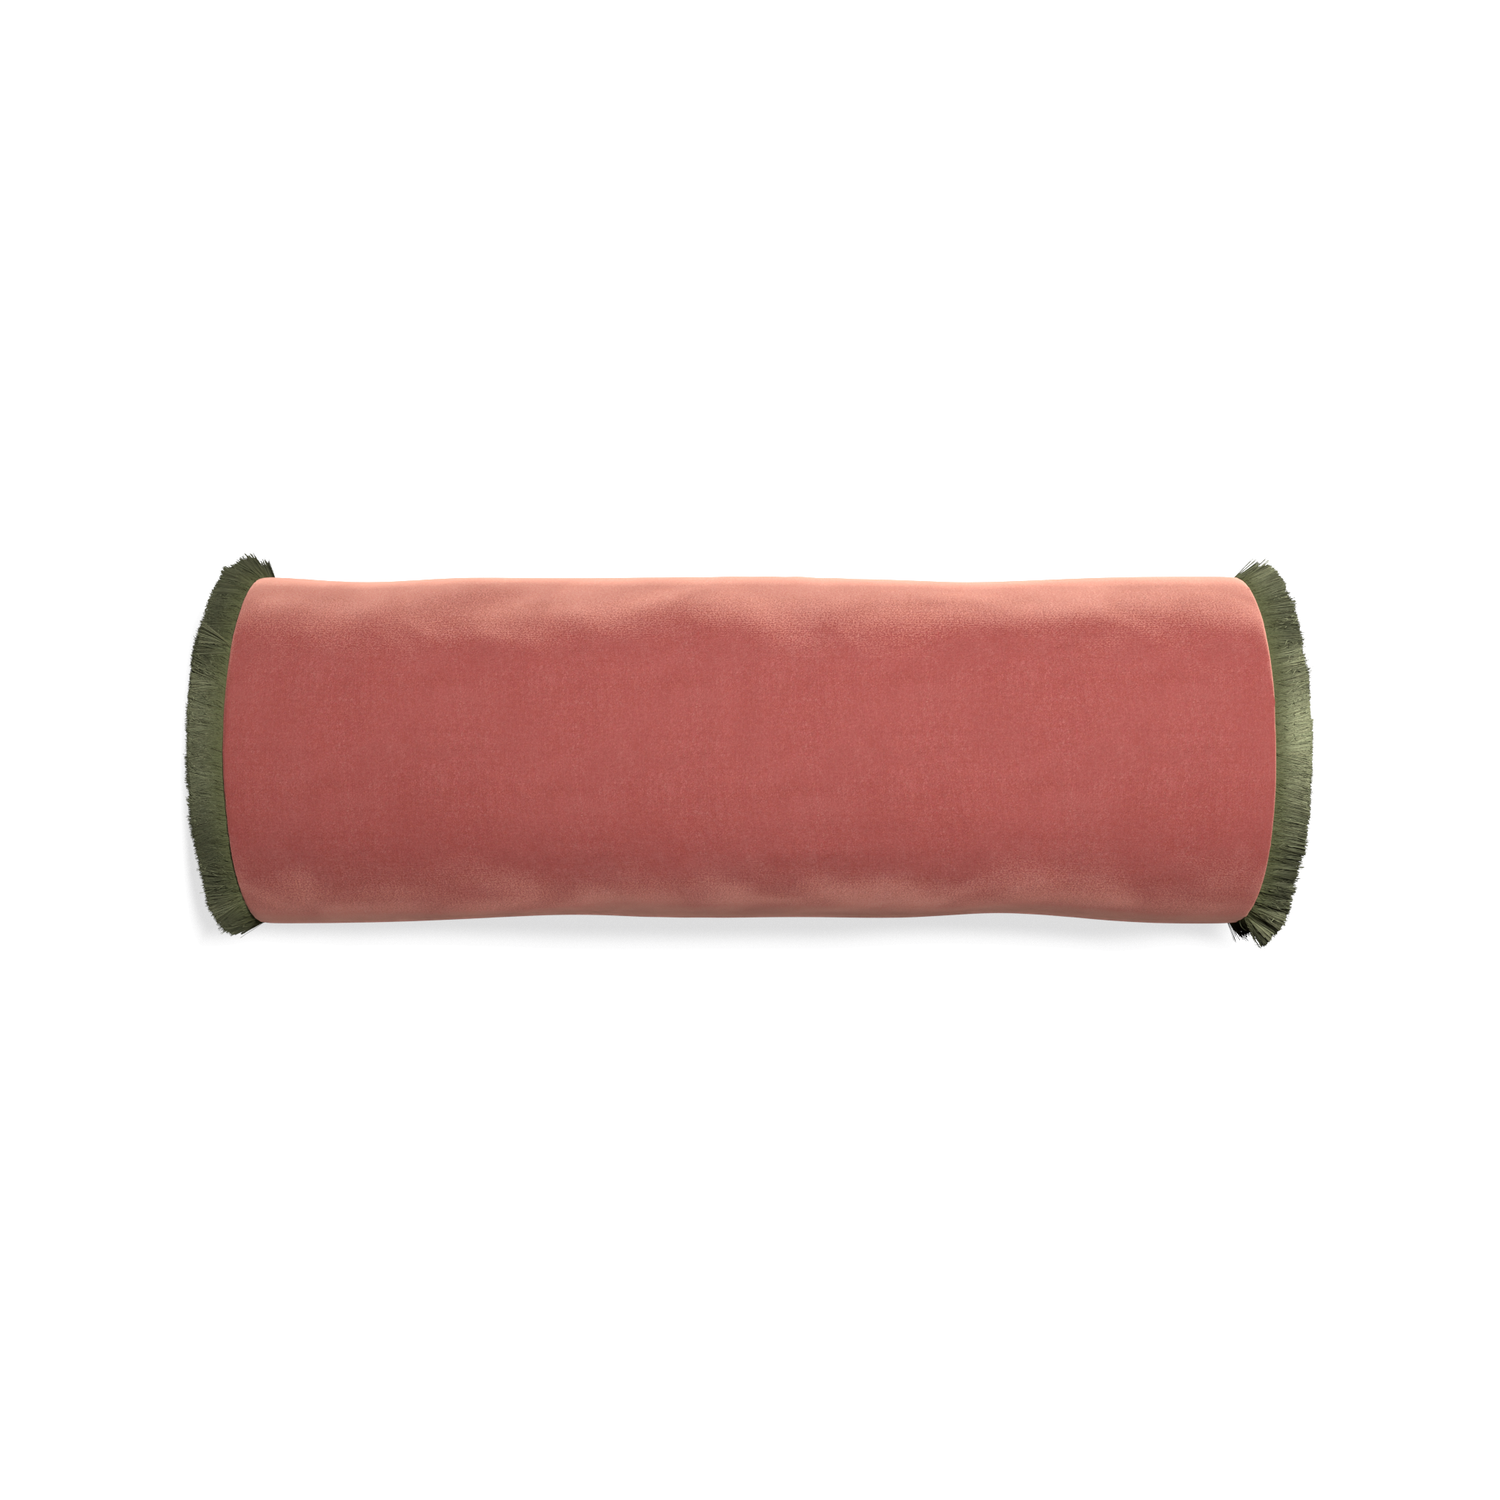 bolster coral velvet pillow with sage green fringe